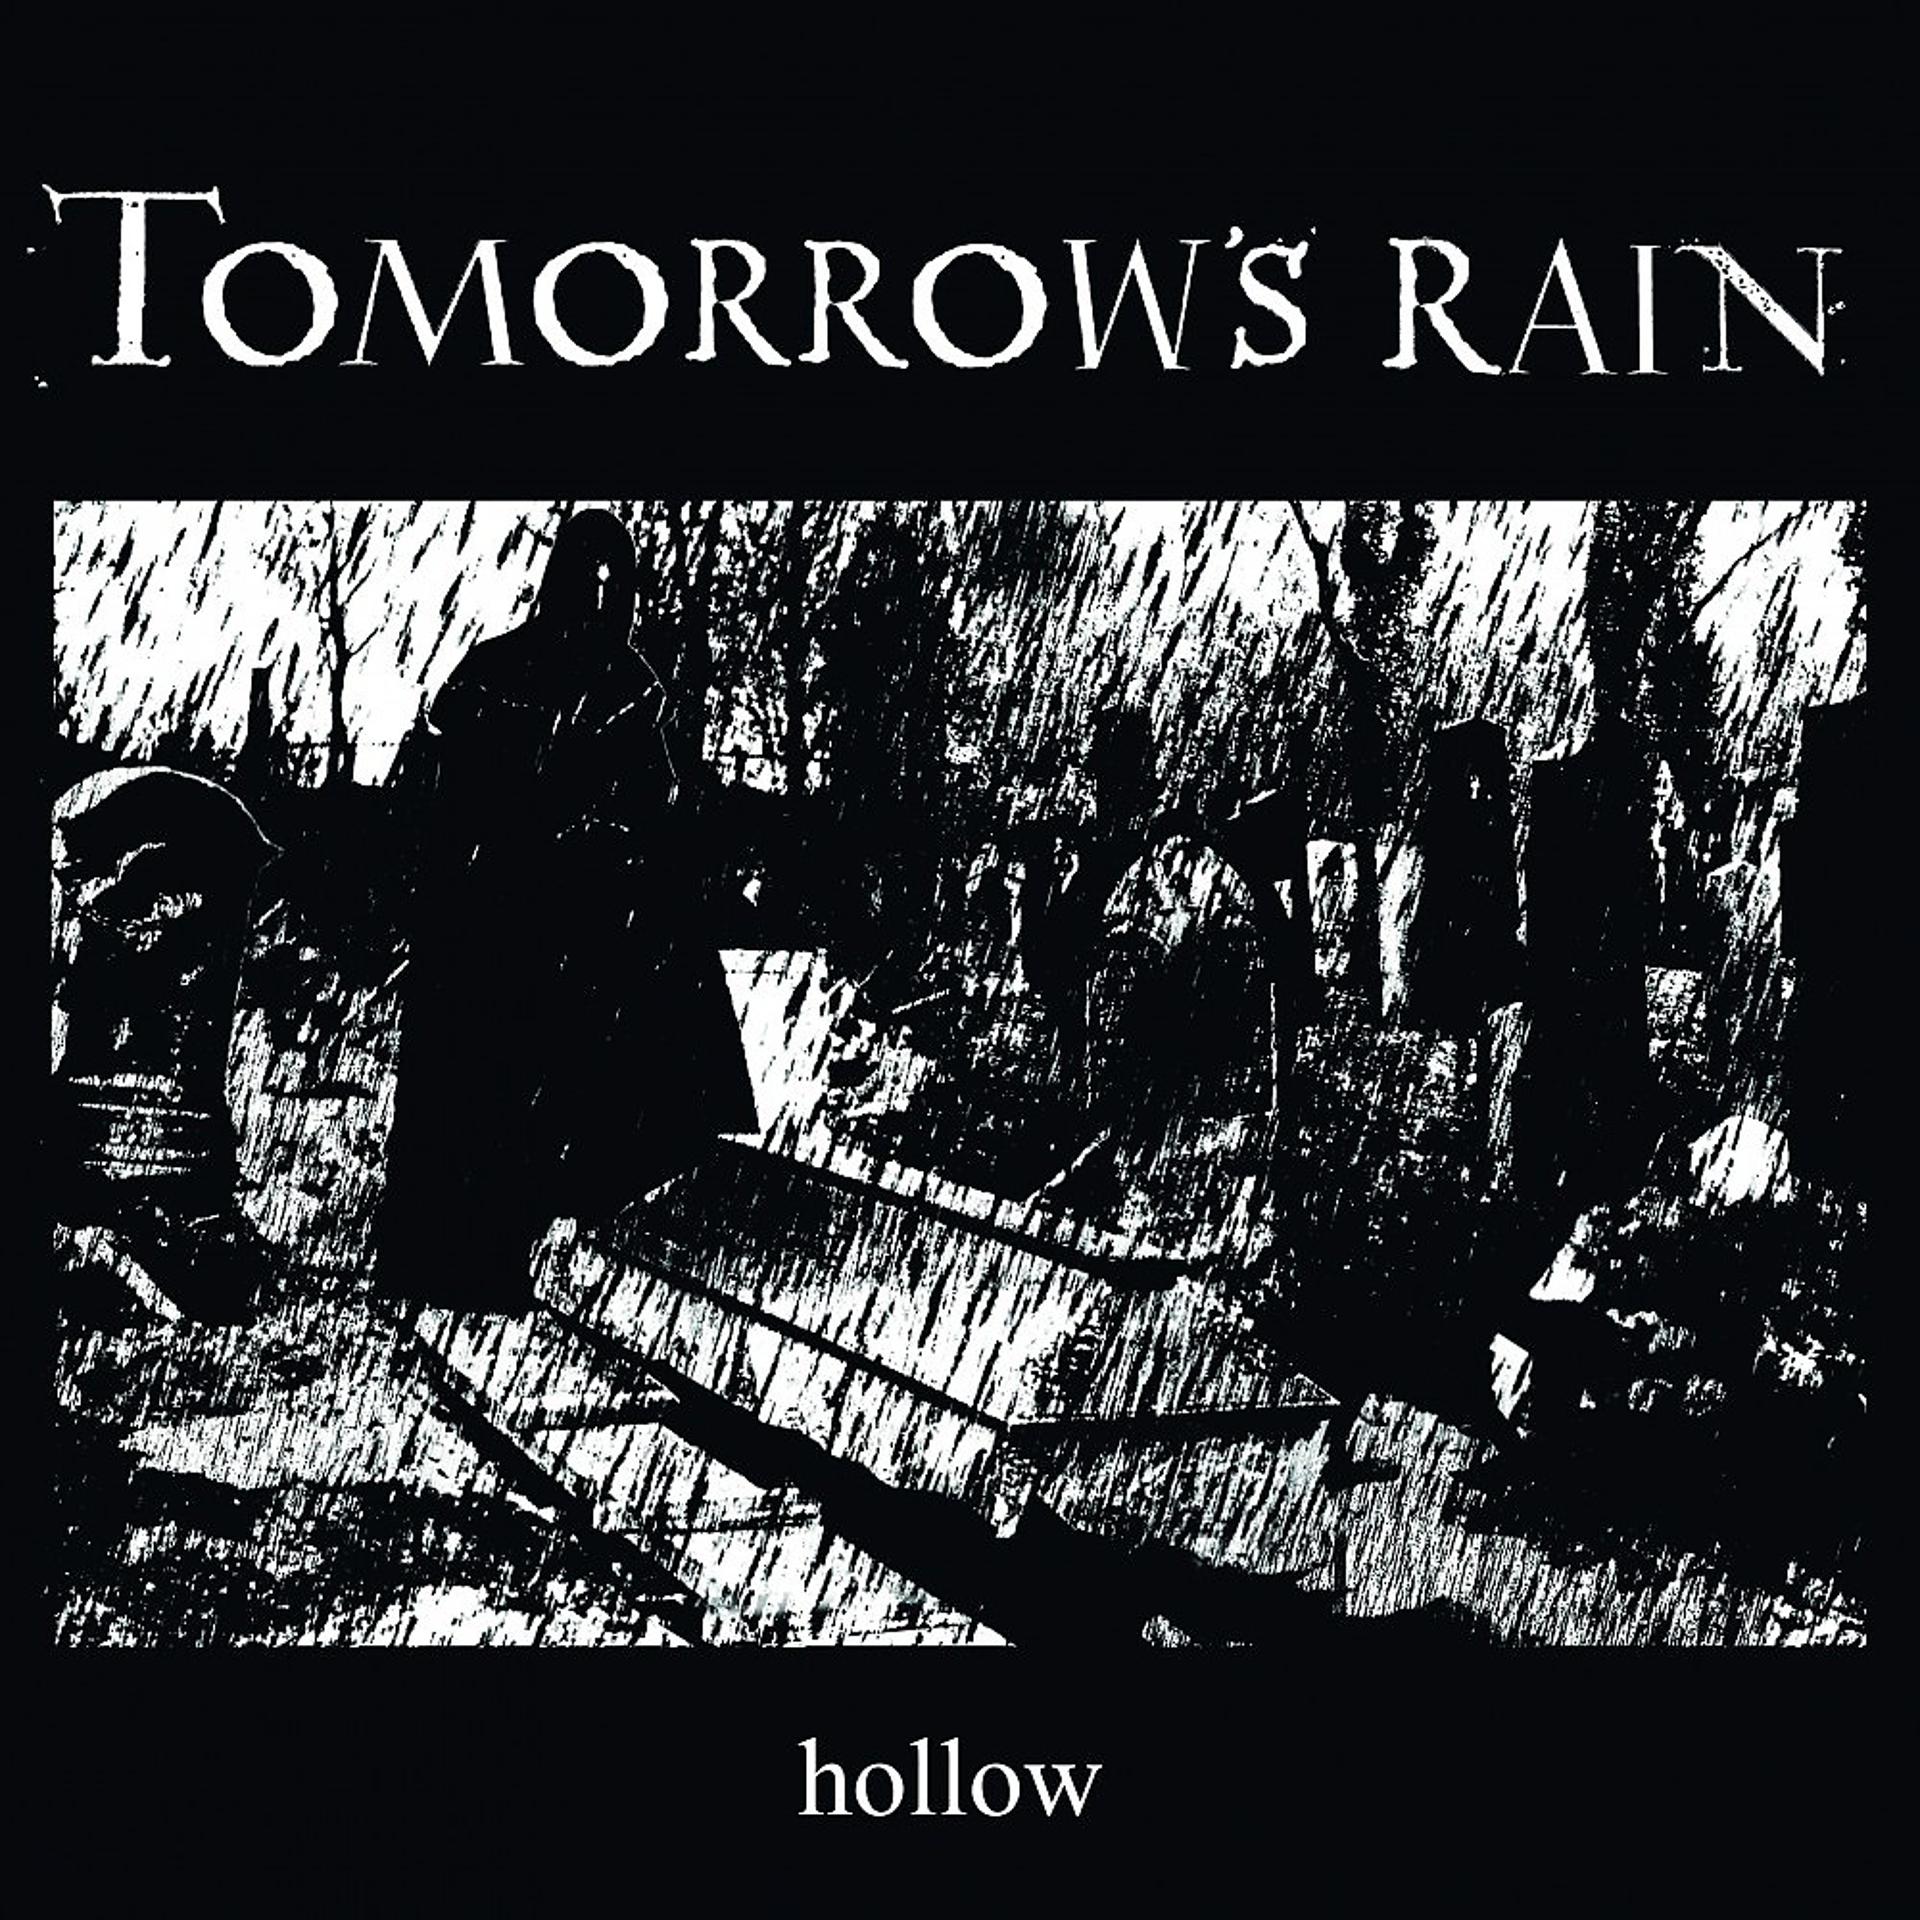 Rain tomorrow. Rain Hollow. Rain Hollow ресторан. Мизари и Рейн. S rain песни